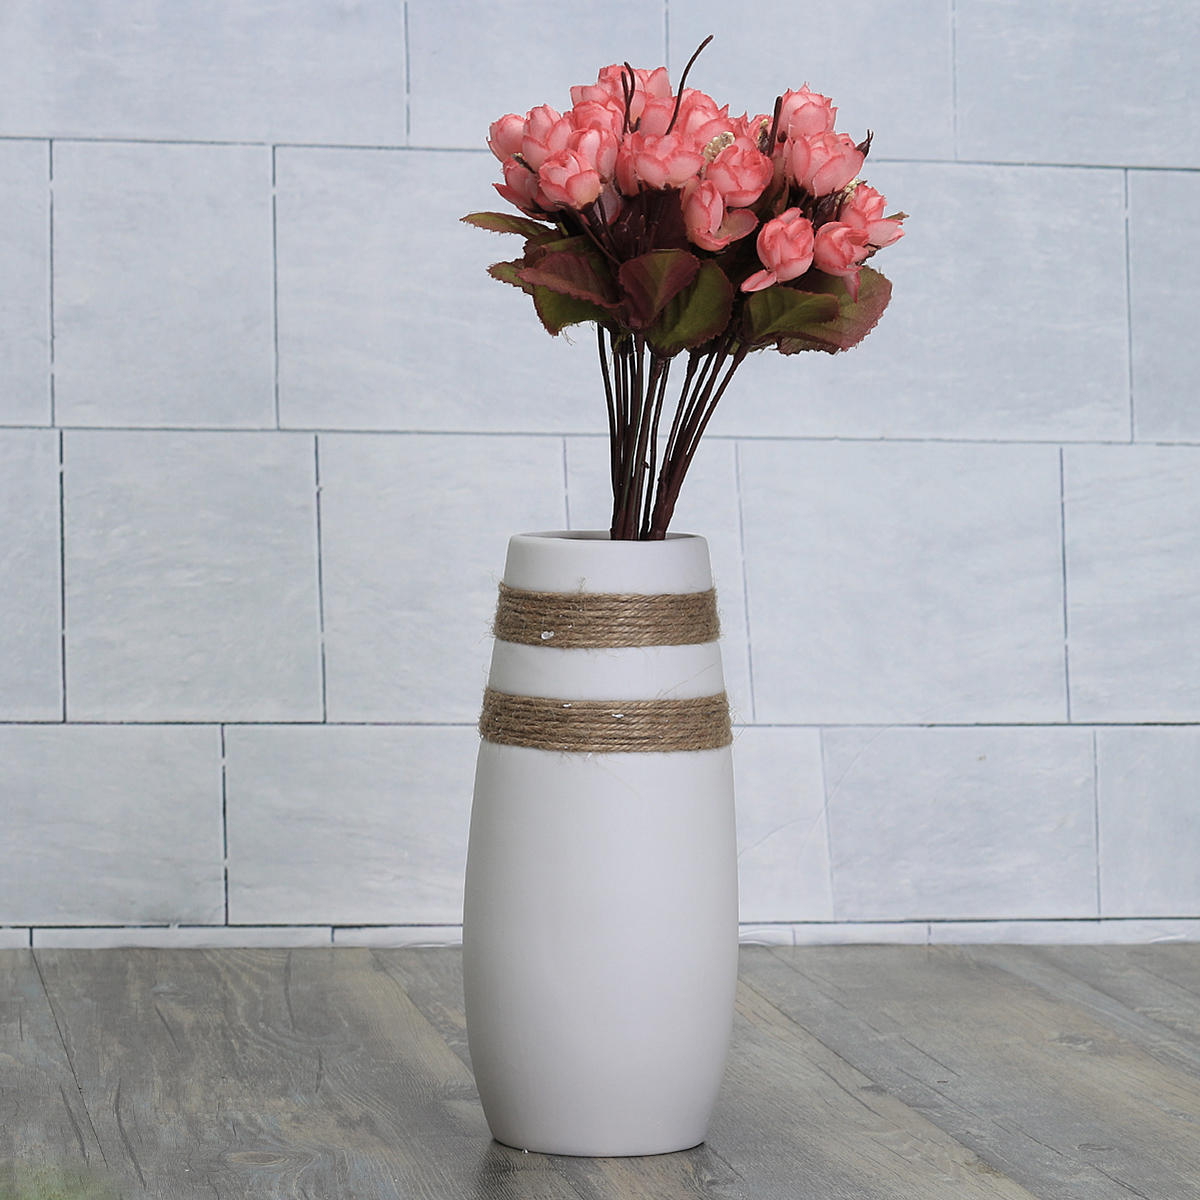 White Creative Modern Ceramic Flower Vase Handmade Flowers Bouquet Vase Home Decor